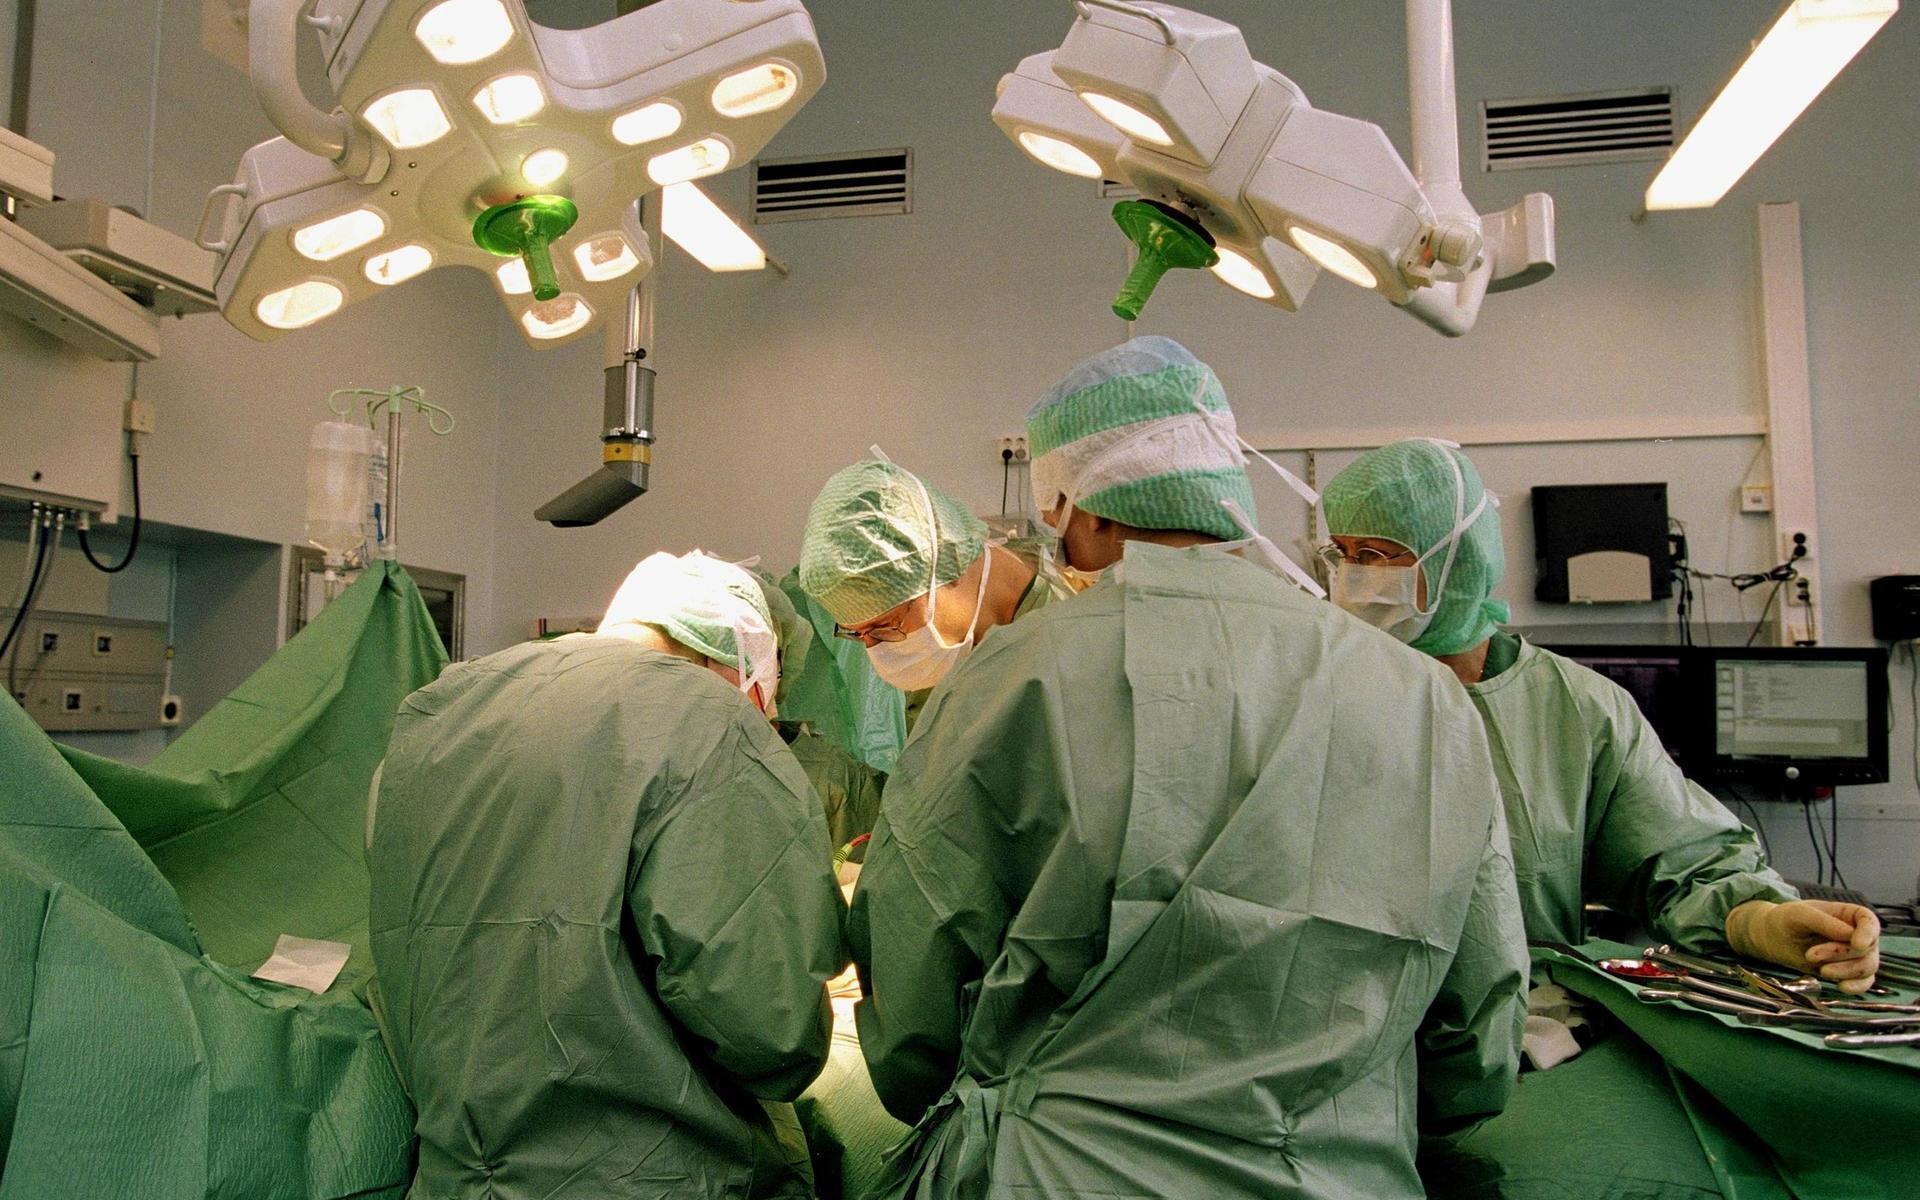 Med start på måndag tvingas sjukhusen i Halmstad, Varberg och Kungsbacka stänga åtta av sina totalt 24 operationssalar. Det innebär att minst 150 hallänningar i veckan kommer att få besked om att deras ingrepp måste skjutas fram.